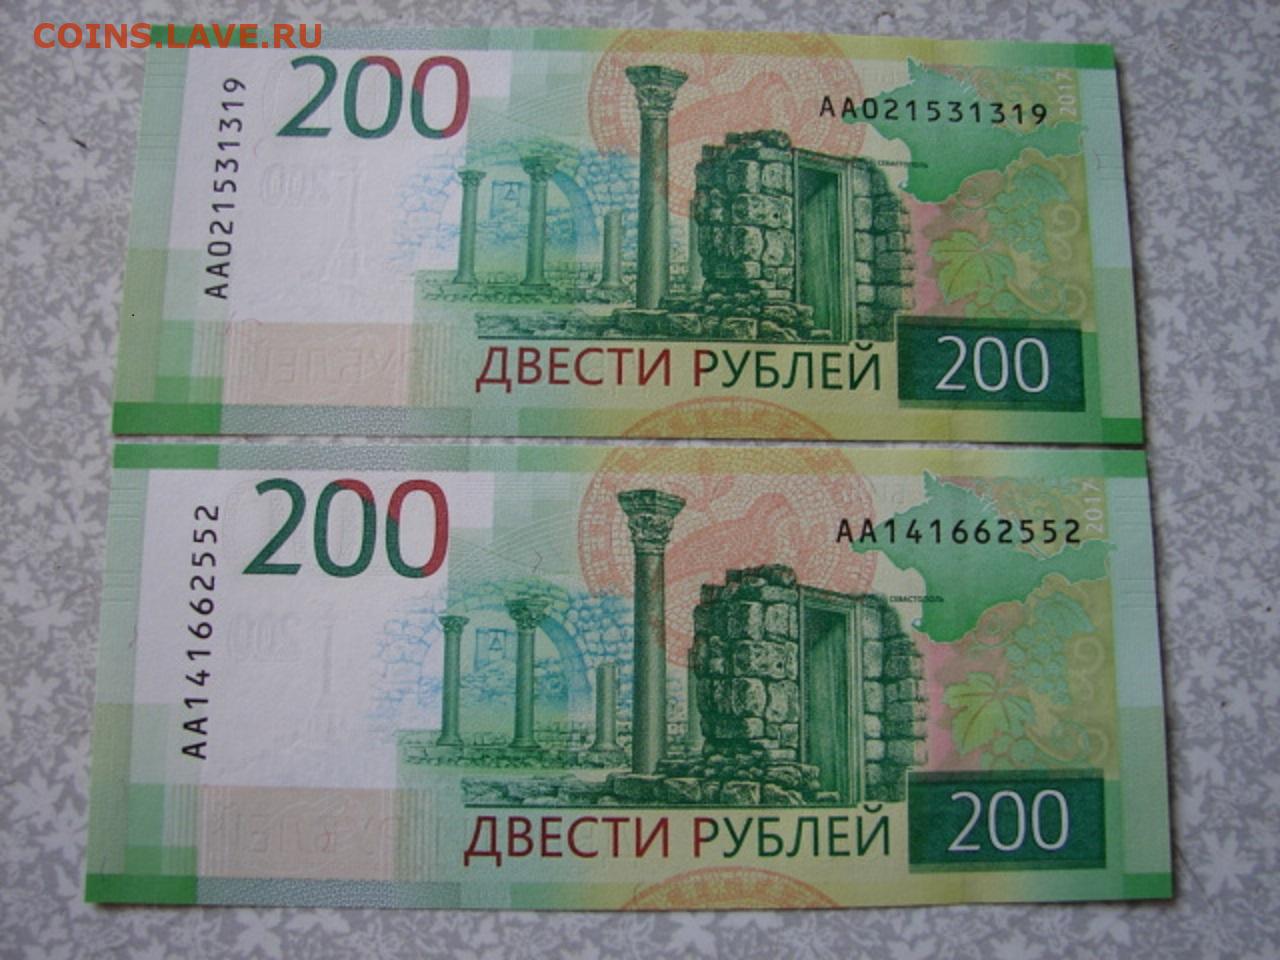 16 200 в рублях. Купюра 200 рублей. 200 Рублей банкнота Крым.